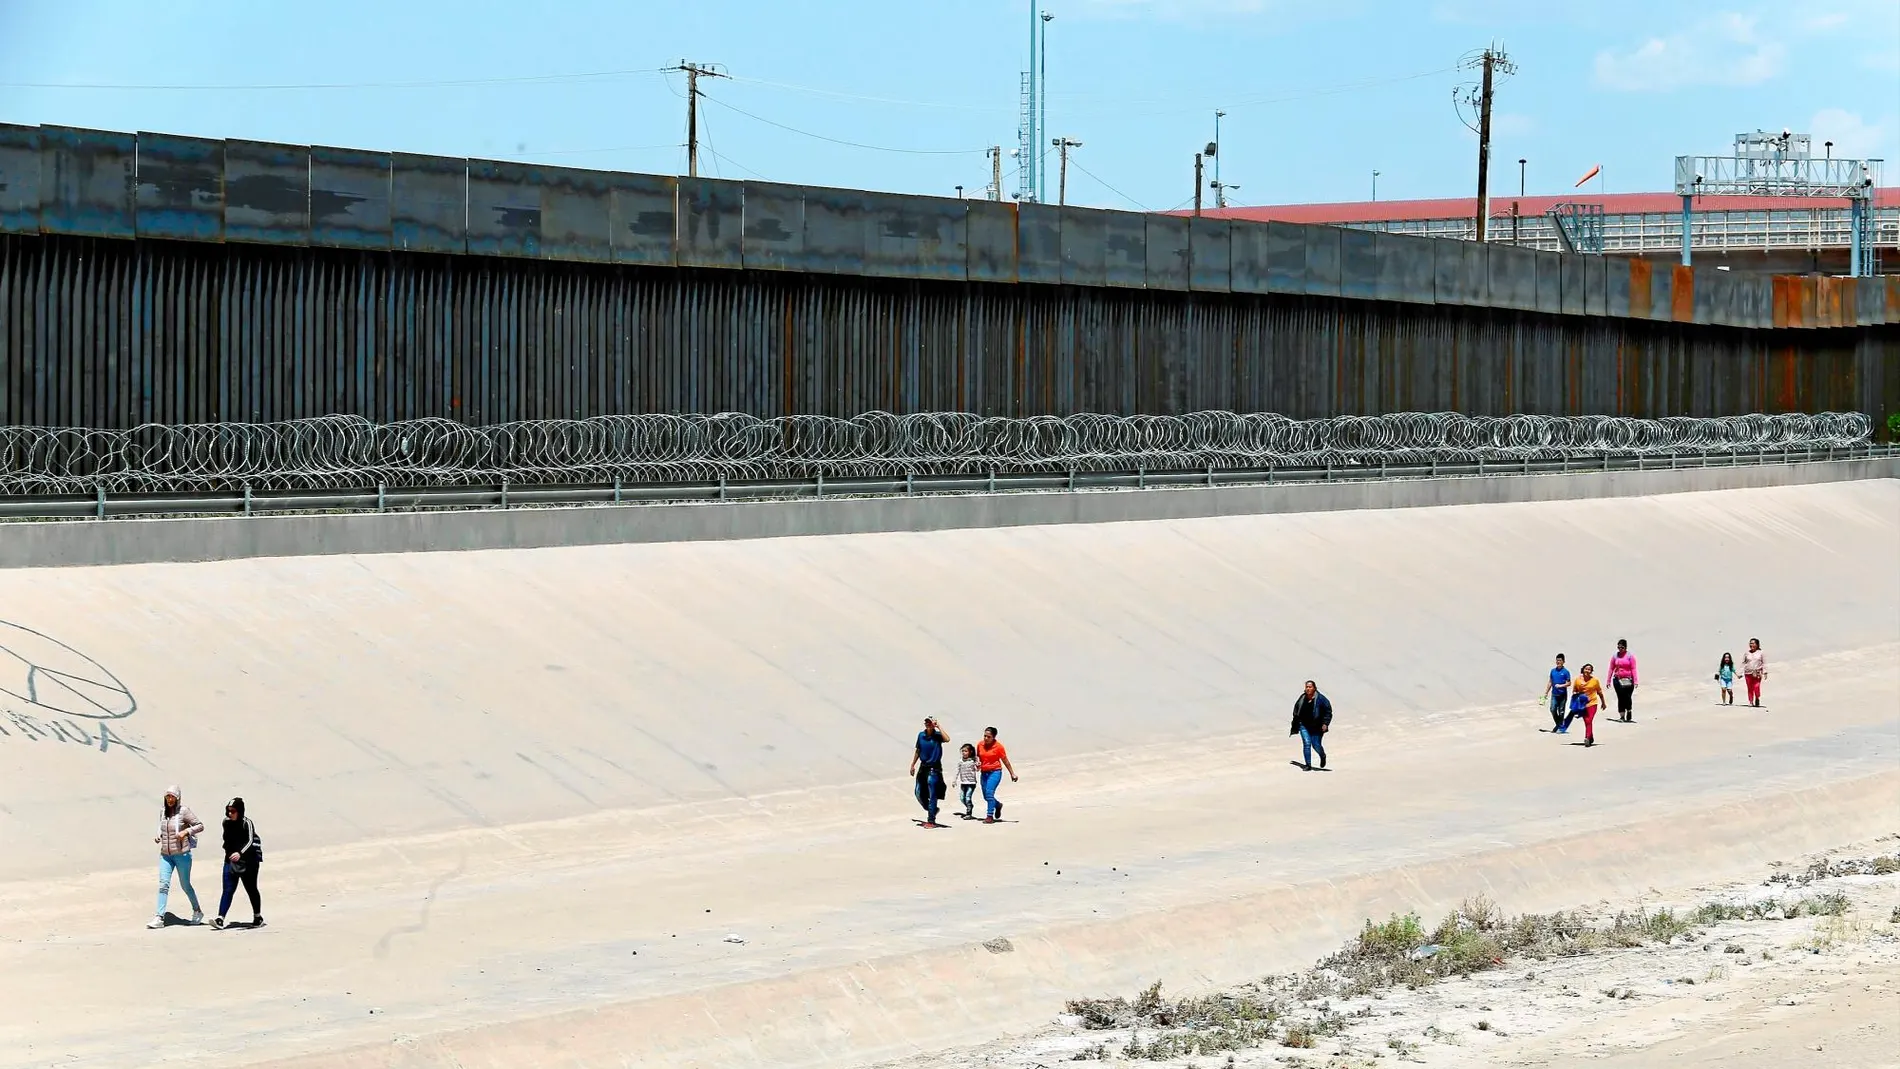 Caminar por El Paso. Un grupo de migrantes caminan ya en suelo estadounidense tras cruzar ilegalmente la frontera desde Ciudad Juárez